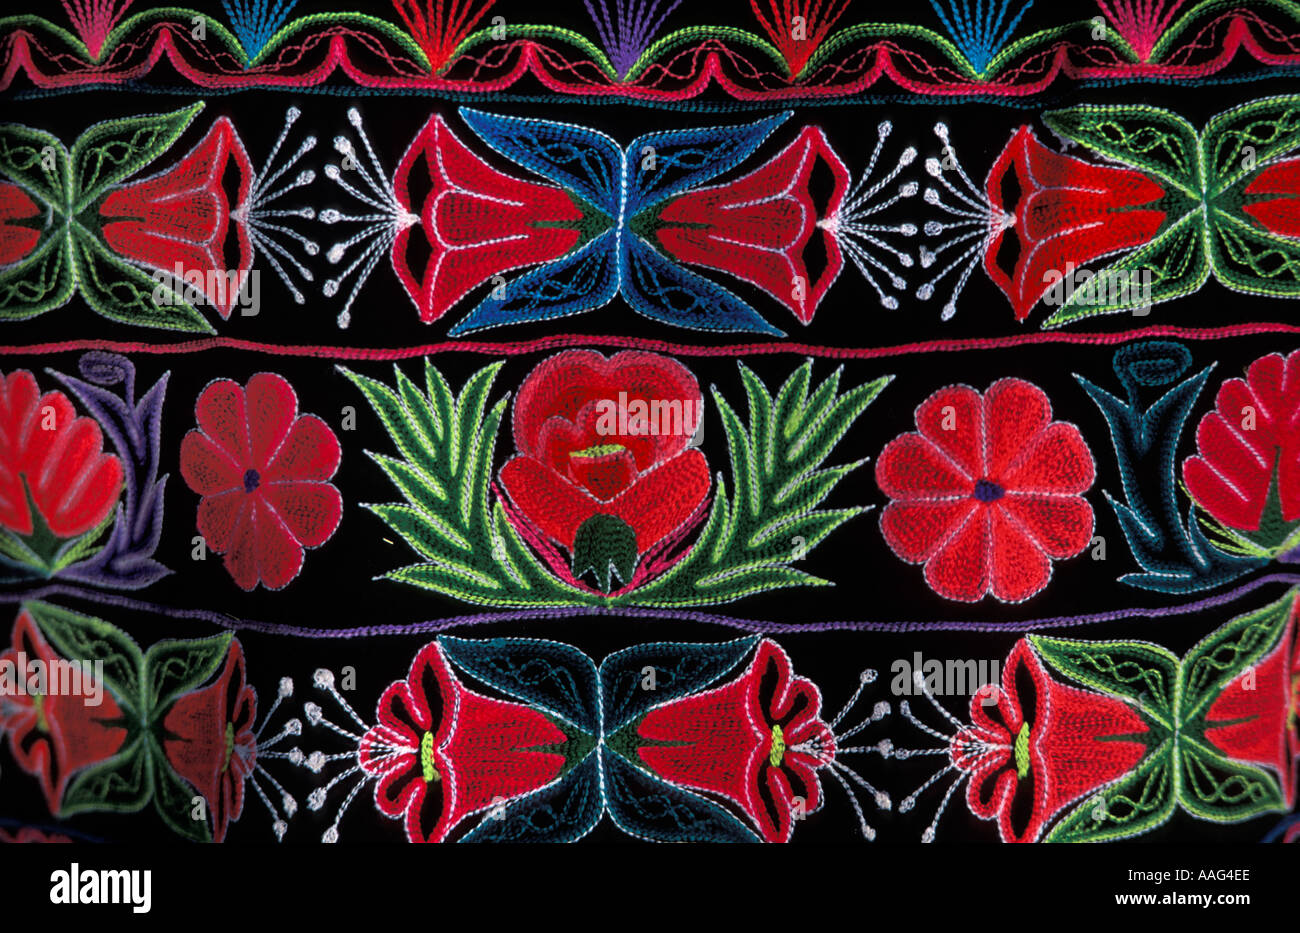 Embroidered shawl immagini e fotografie stock ad alta risoluzione - Alamy